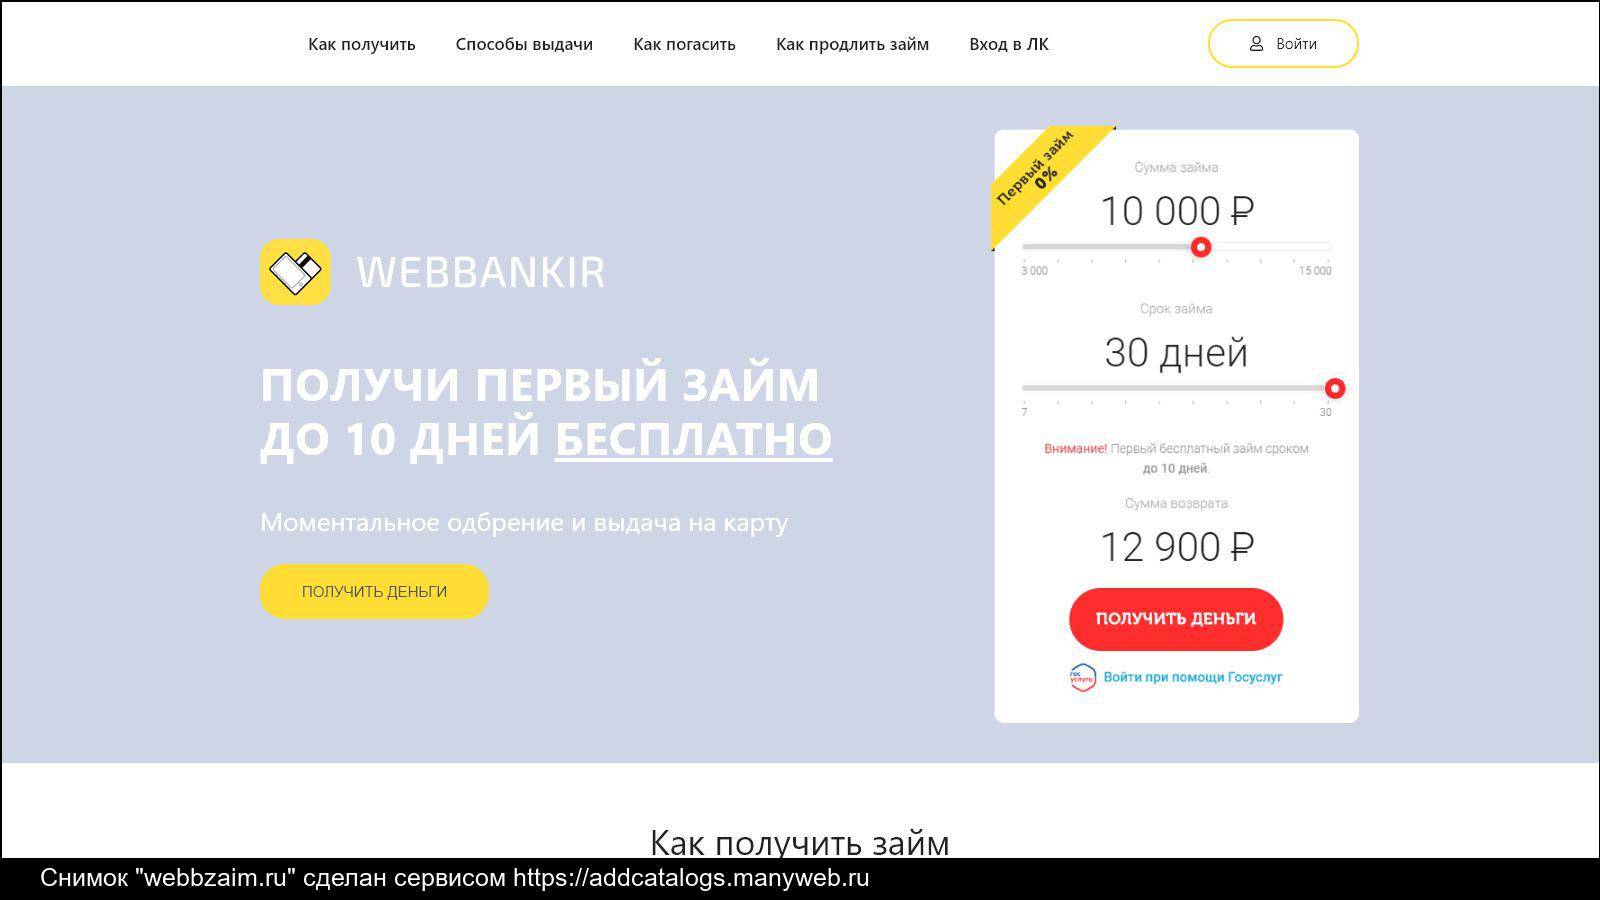 Веббанкир (webbankir.com) — взять займ на карту в мфк "вэббанкир": онлайн заявка, личный кабинет, условия мфо